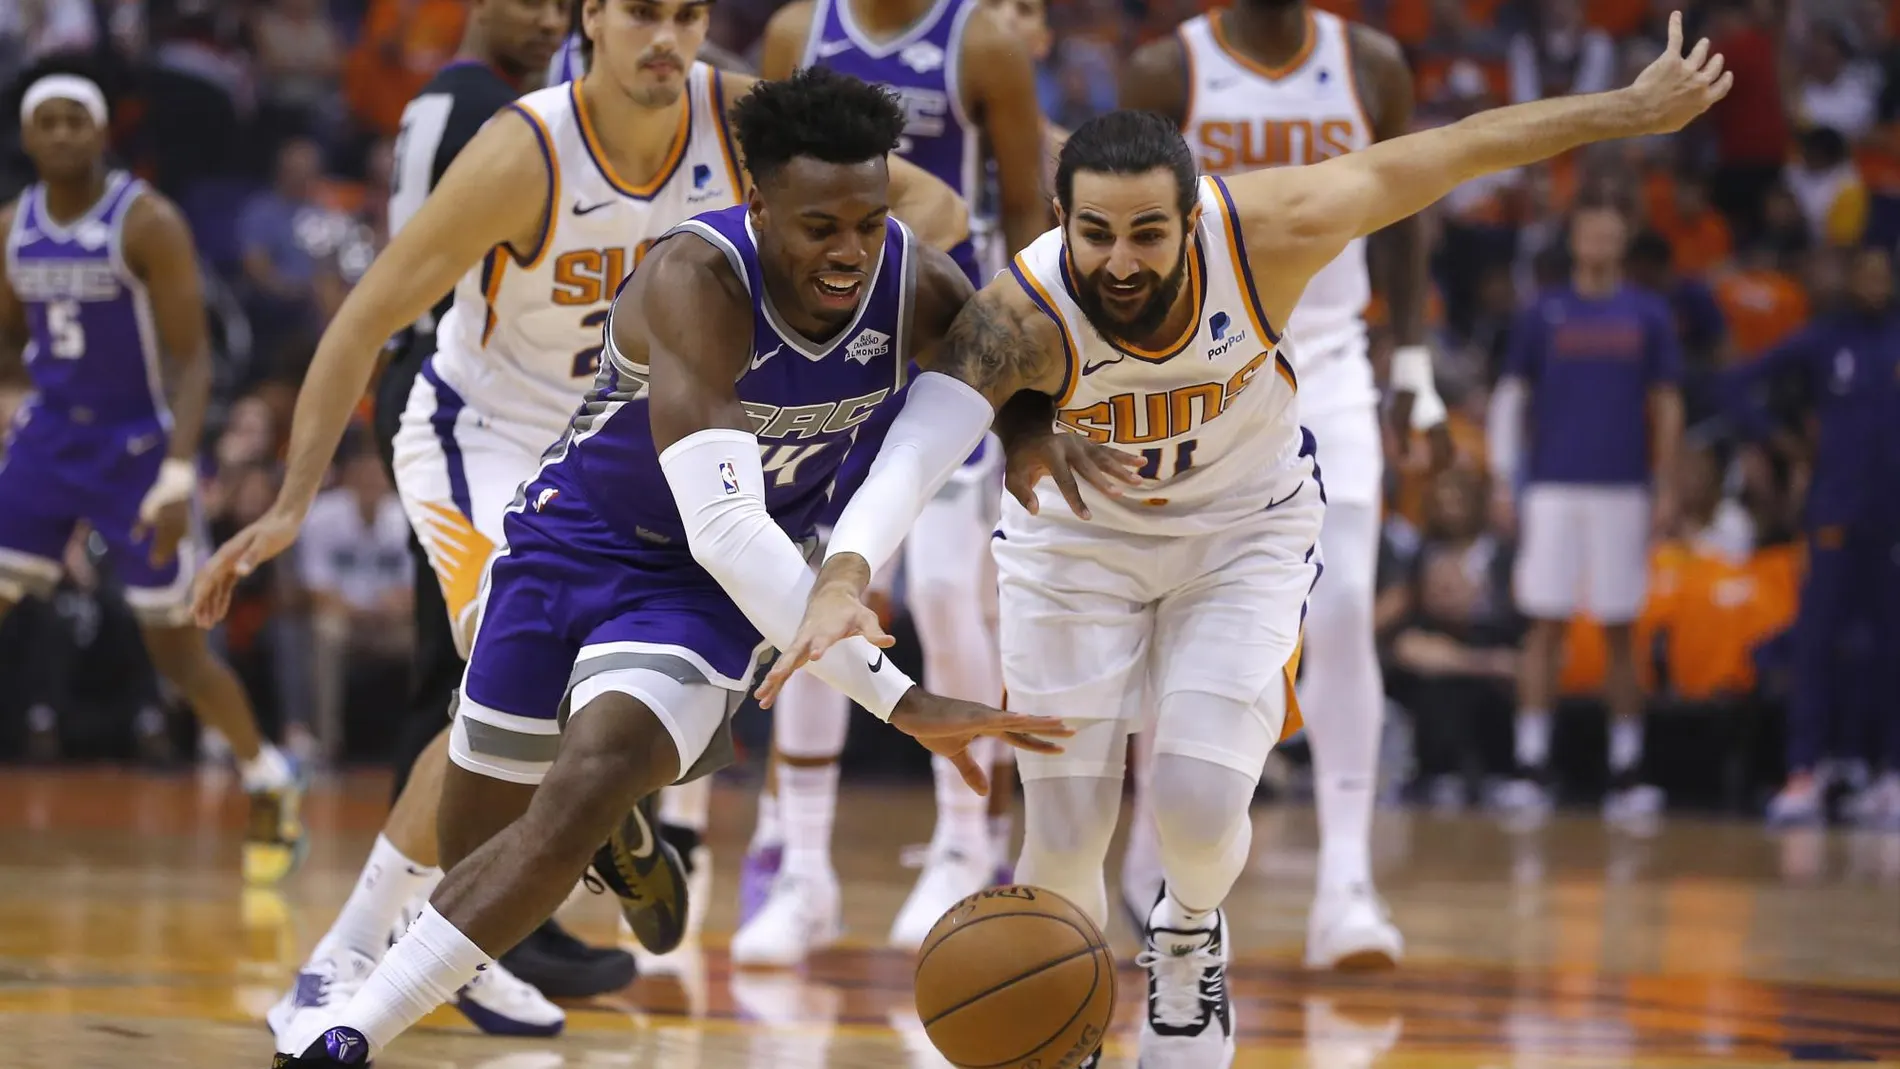 La defensa de Ricky Rubio fue decisiva en la victoria de los Suns